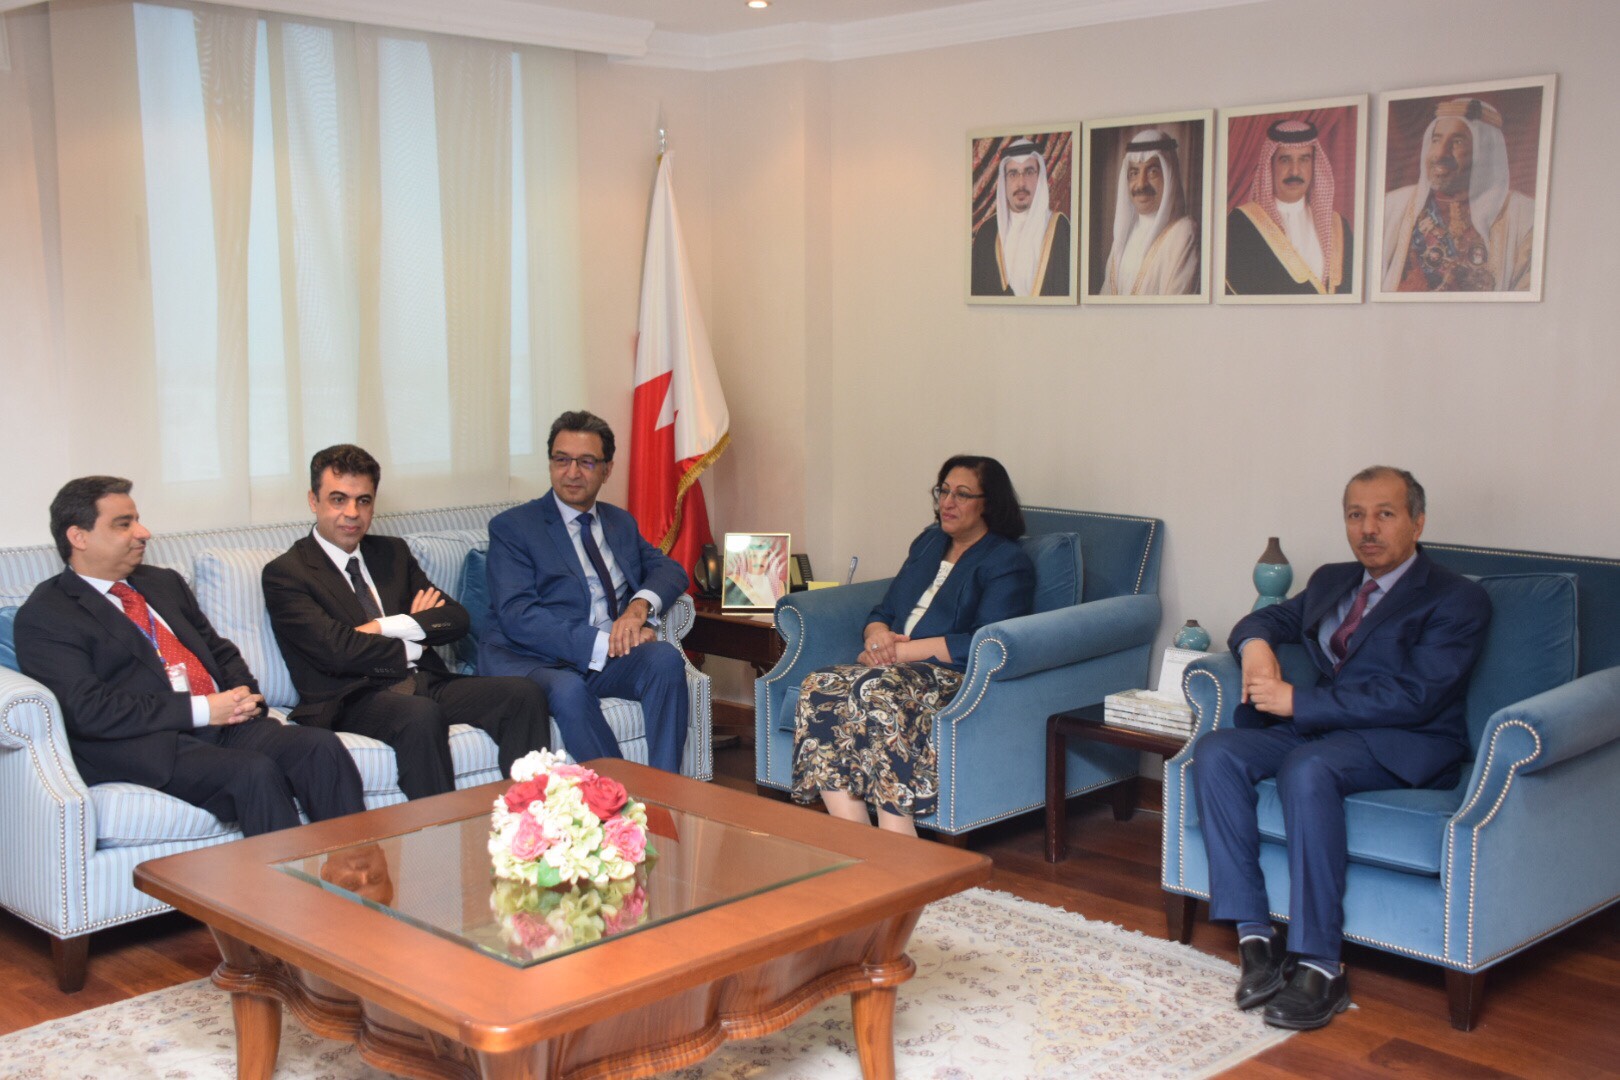 سعادة وزيرة الصحة تجتمع مع الأطباء الزائرين والفرق الطبية البحرينية وتشيد بنجاح البرنامج في علاج العديد من الحالات الدقيقة بالمملكة